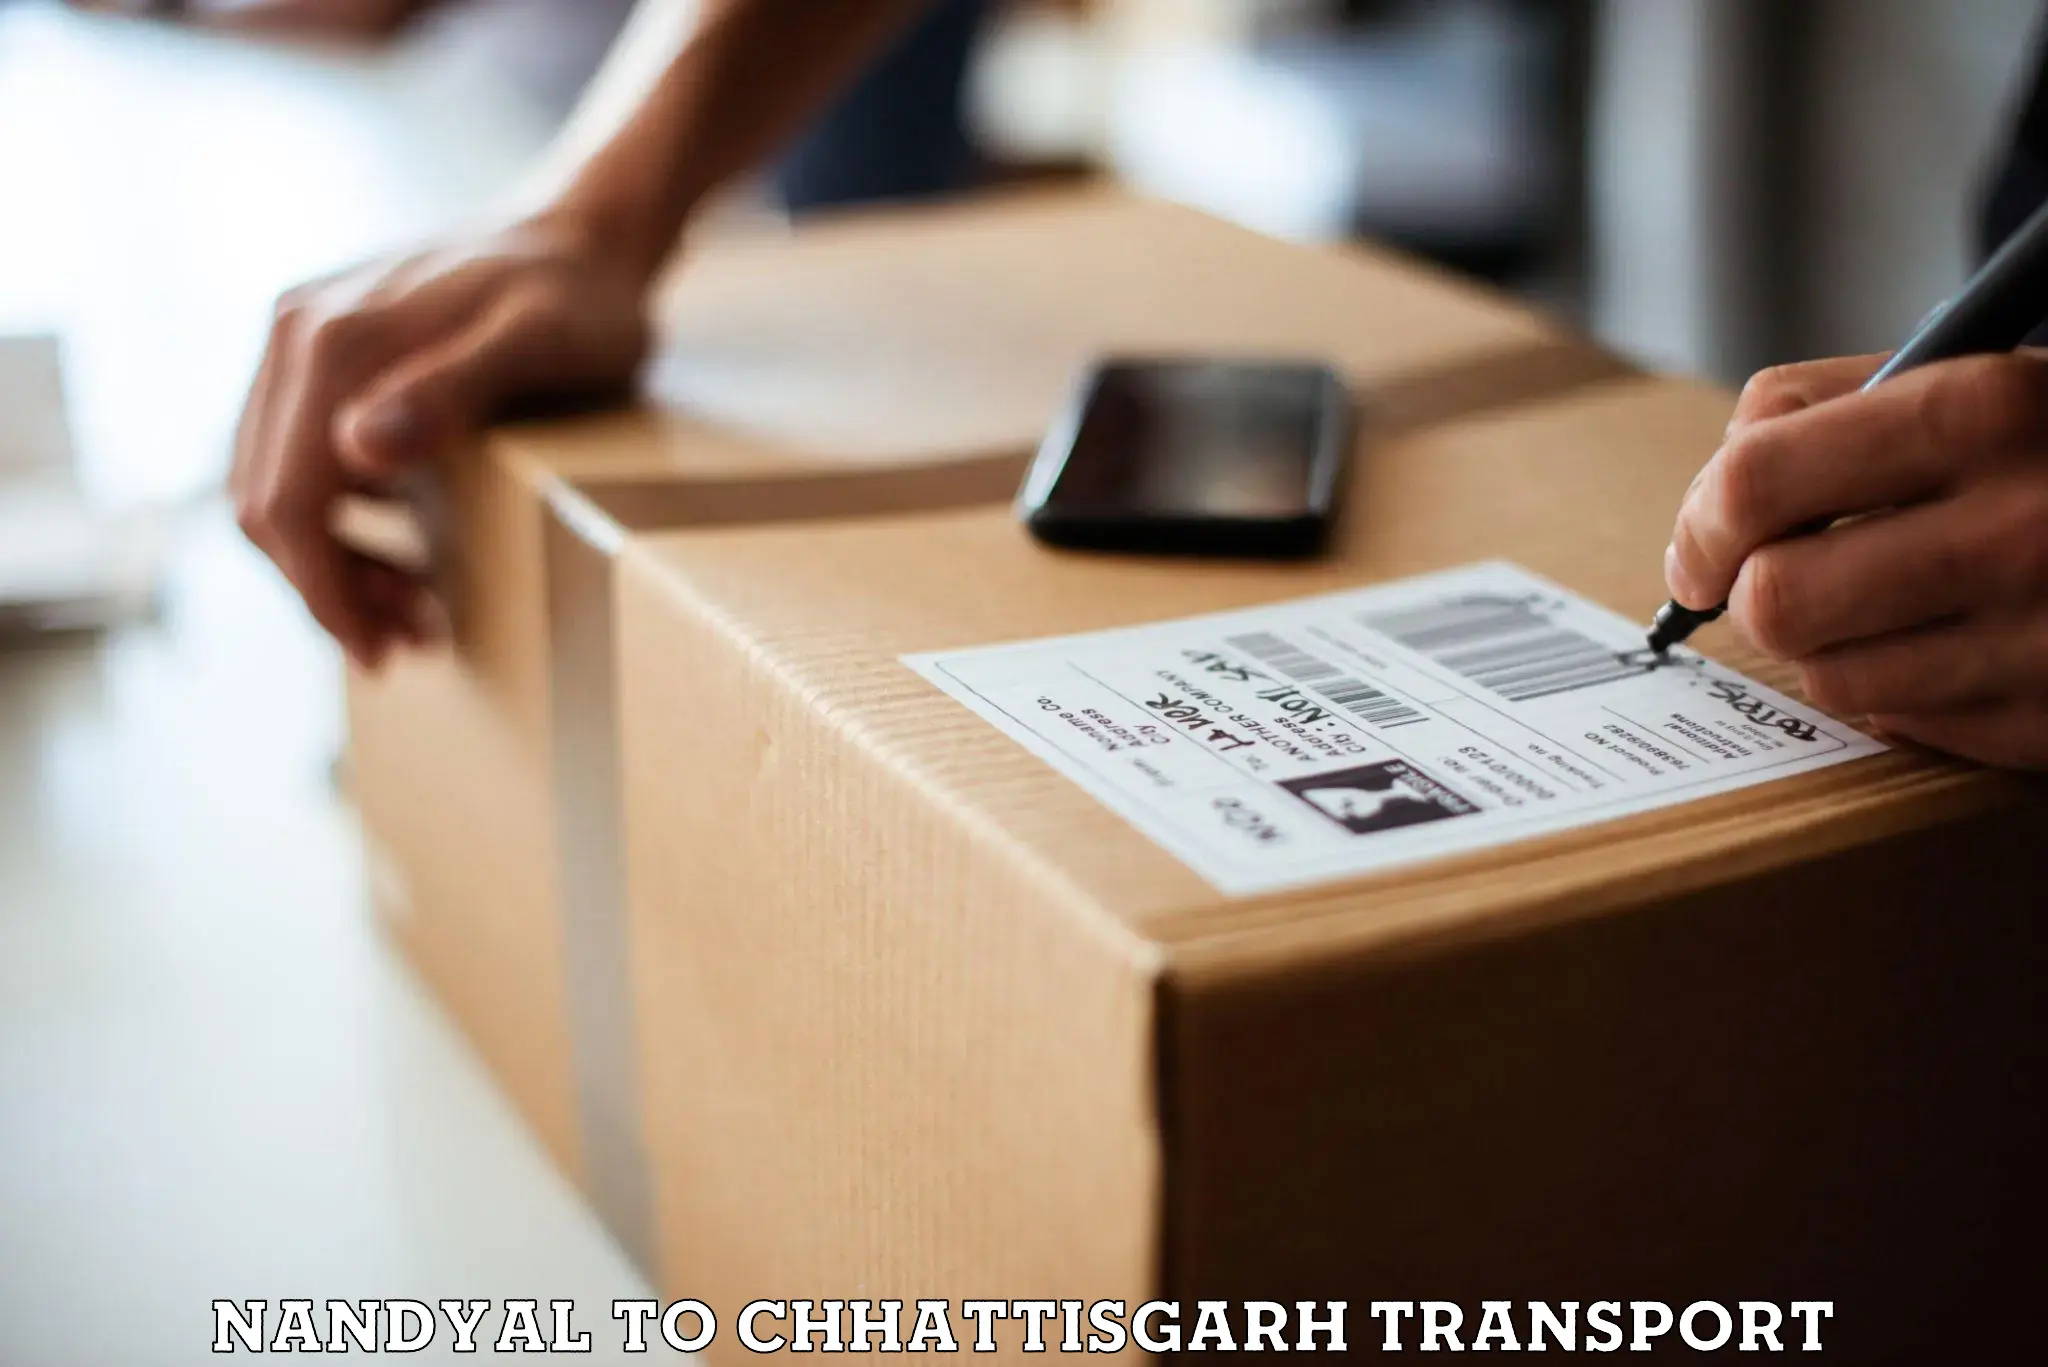 Daily parcel service transport Nandyal to Patna Chhattisgarh